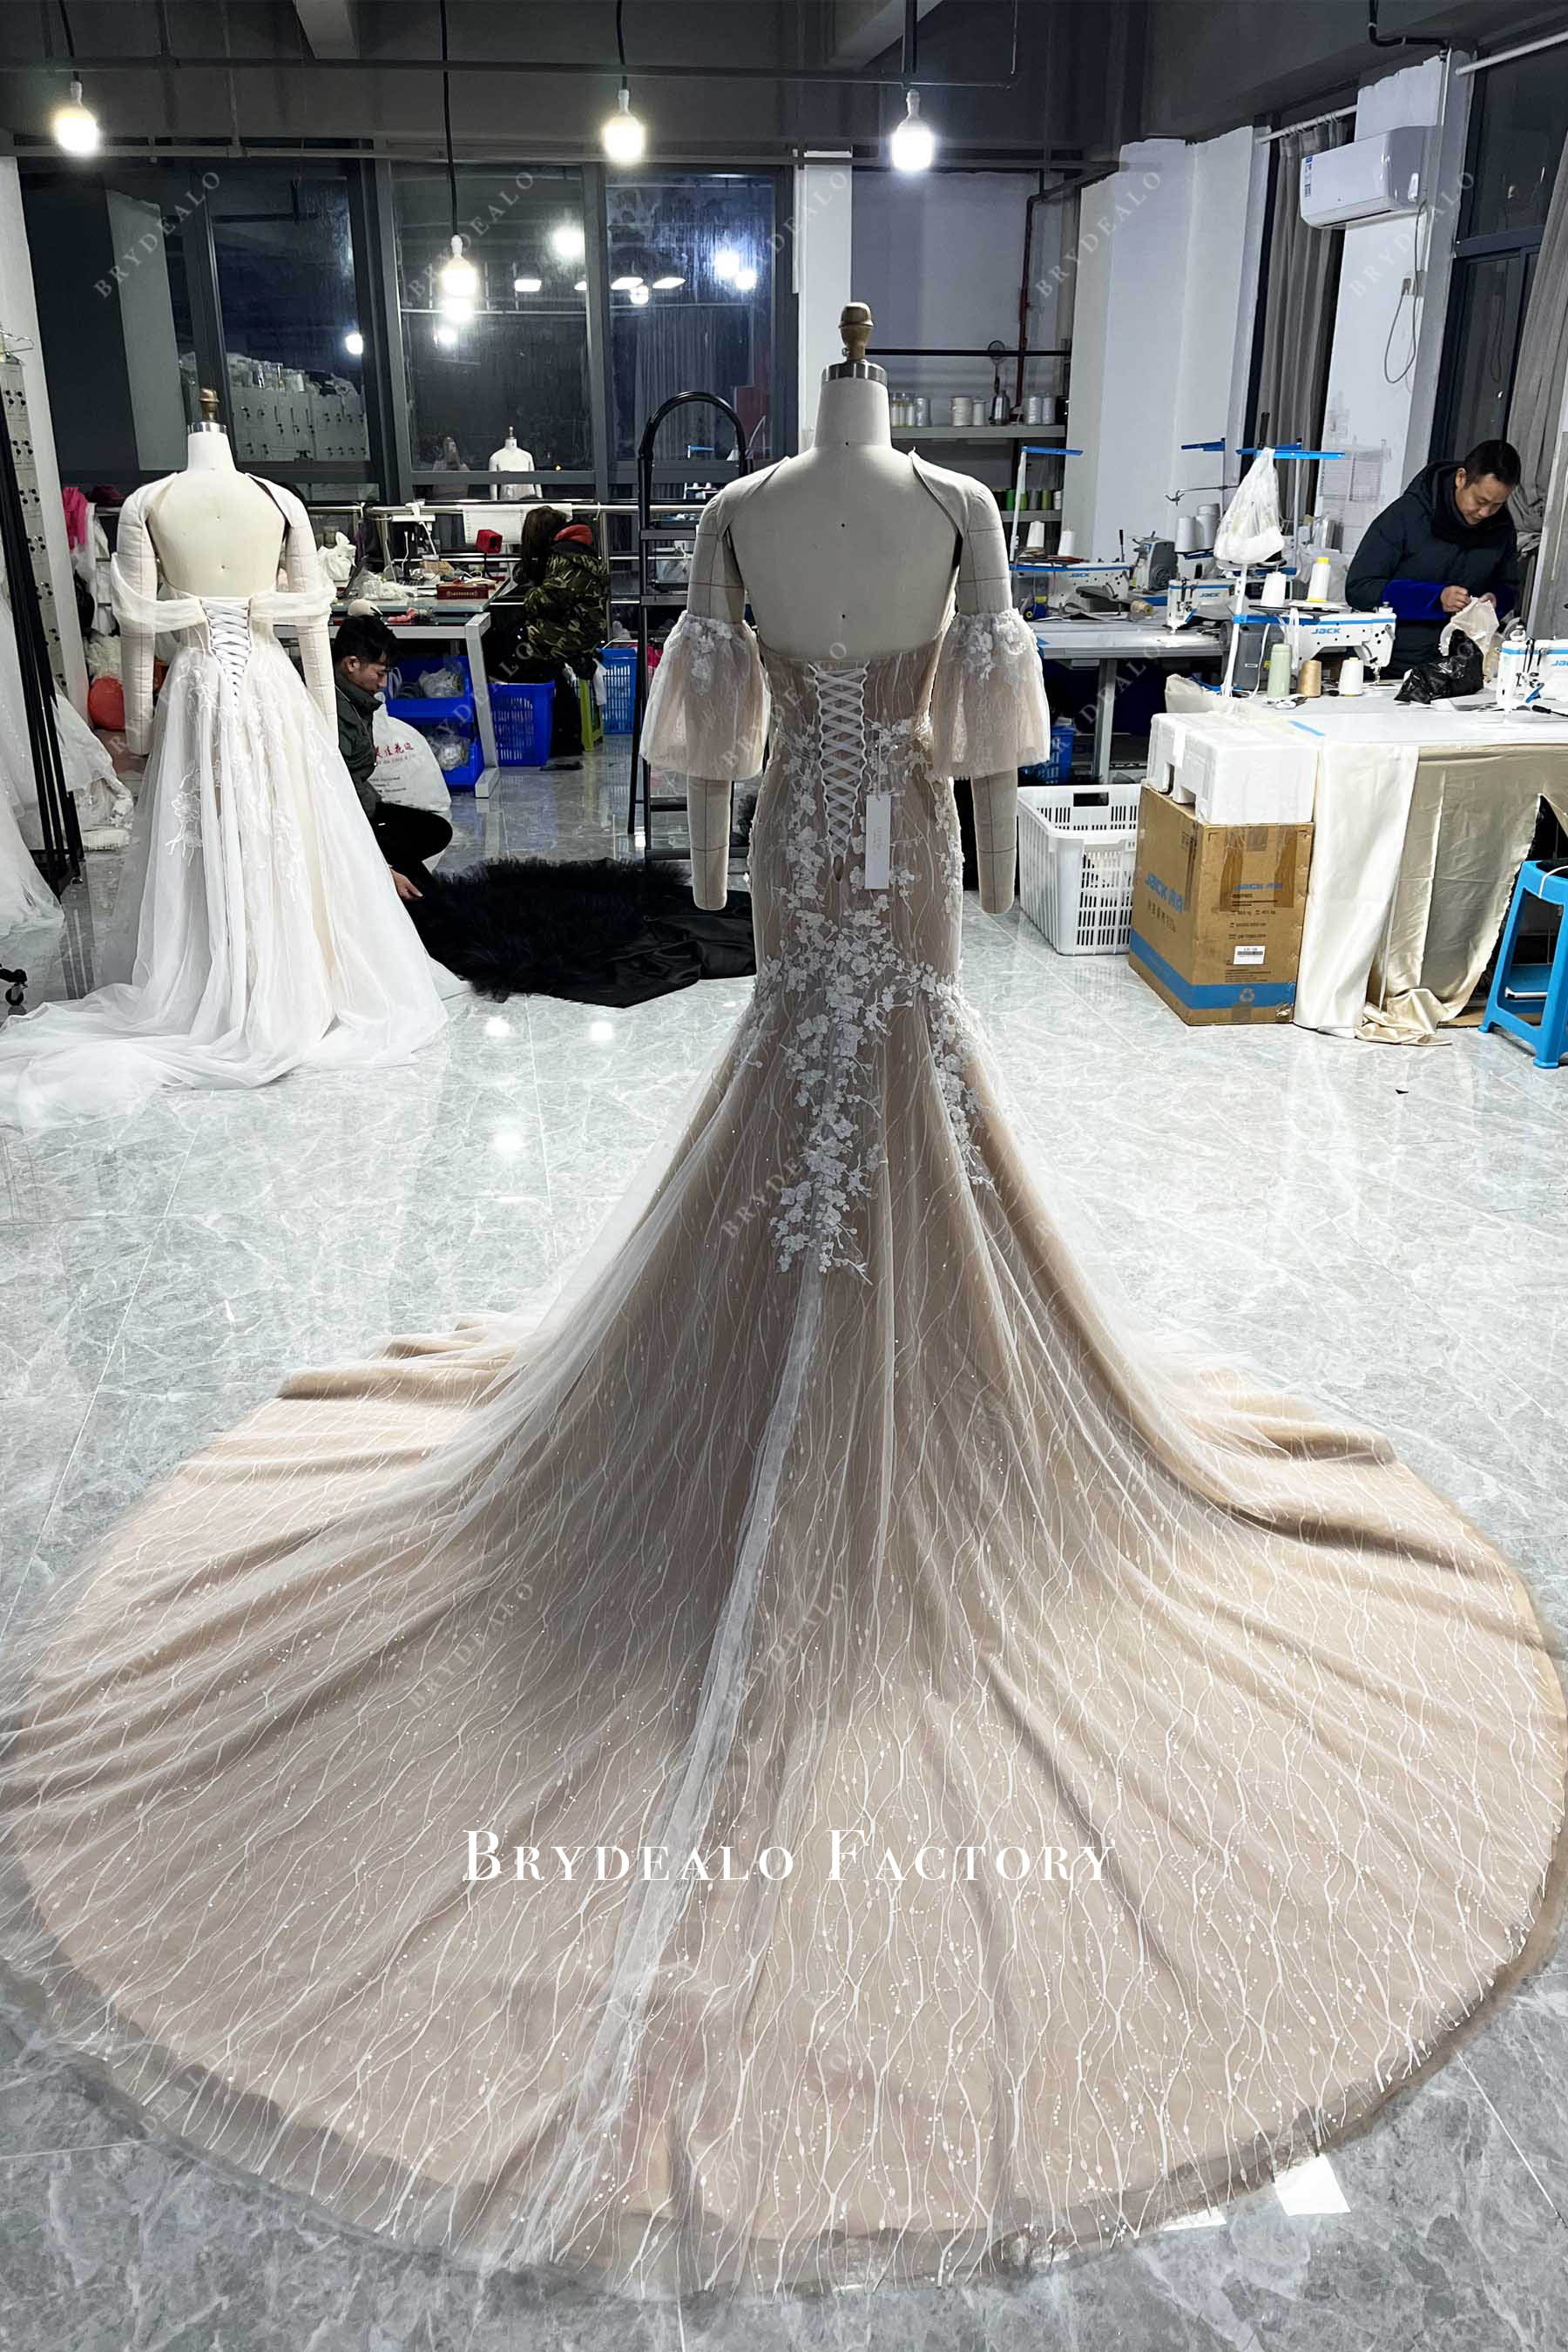 3D Lace Corset Detachable Off-shoulder Mermaid Wedding Dress